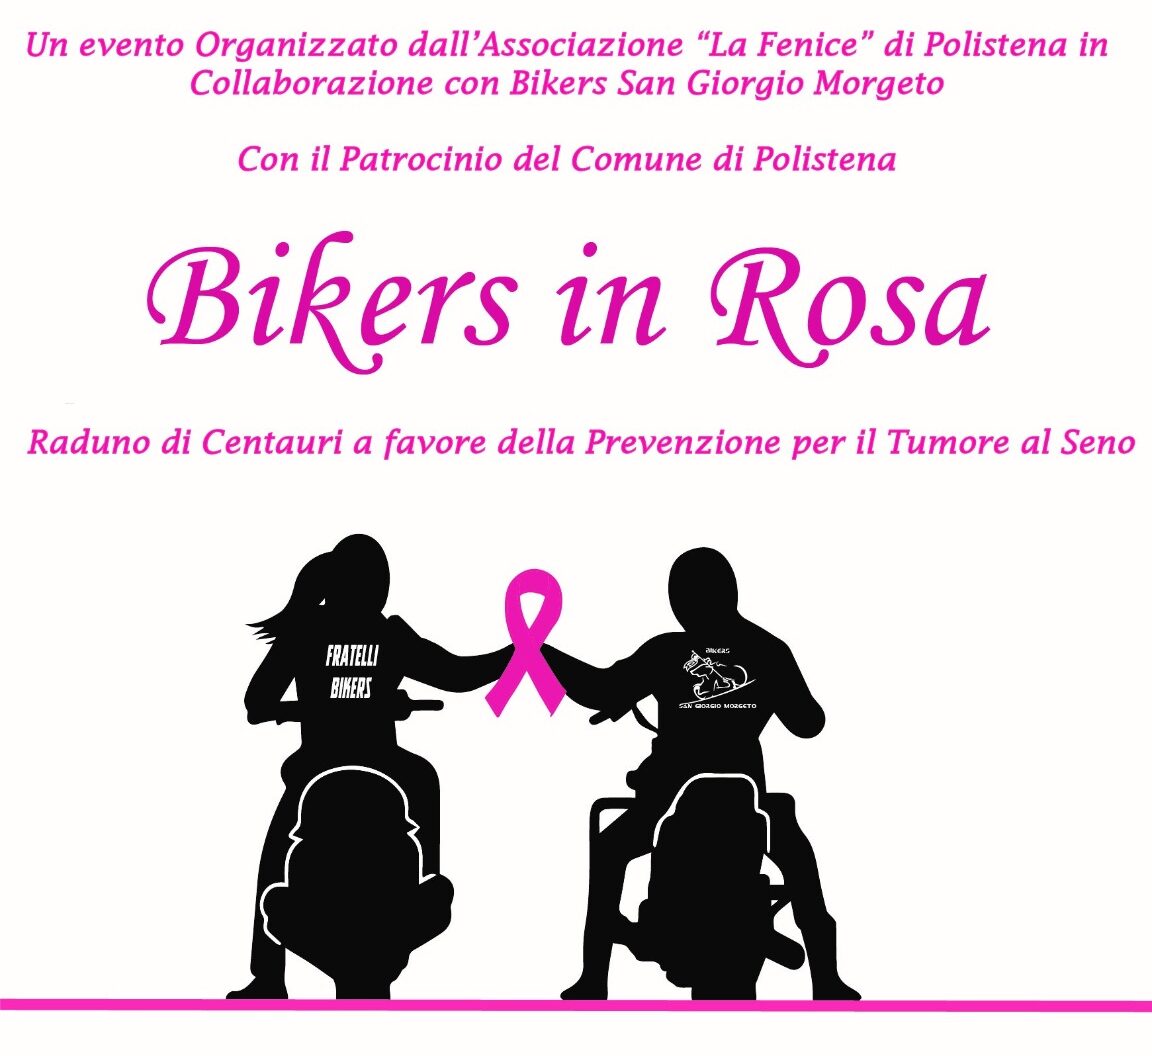 Bikers in Rosa - Raduno di Centauri a favore della Prevenzione per il tumore al seno